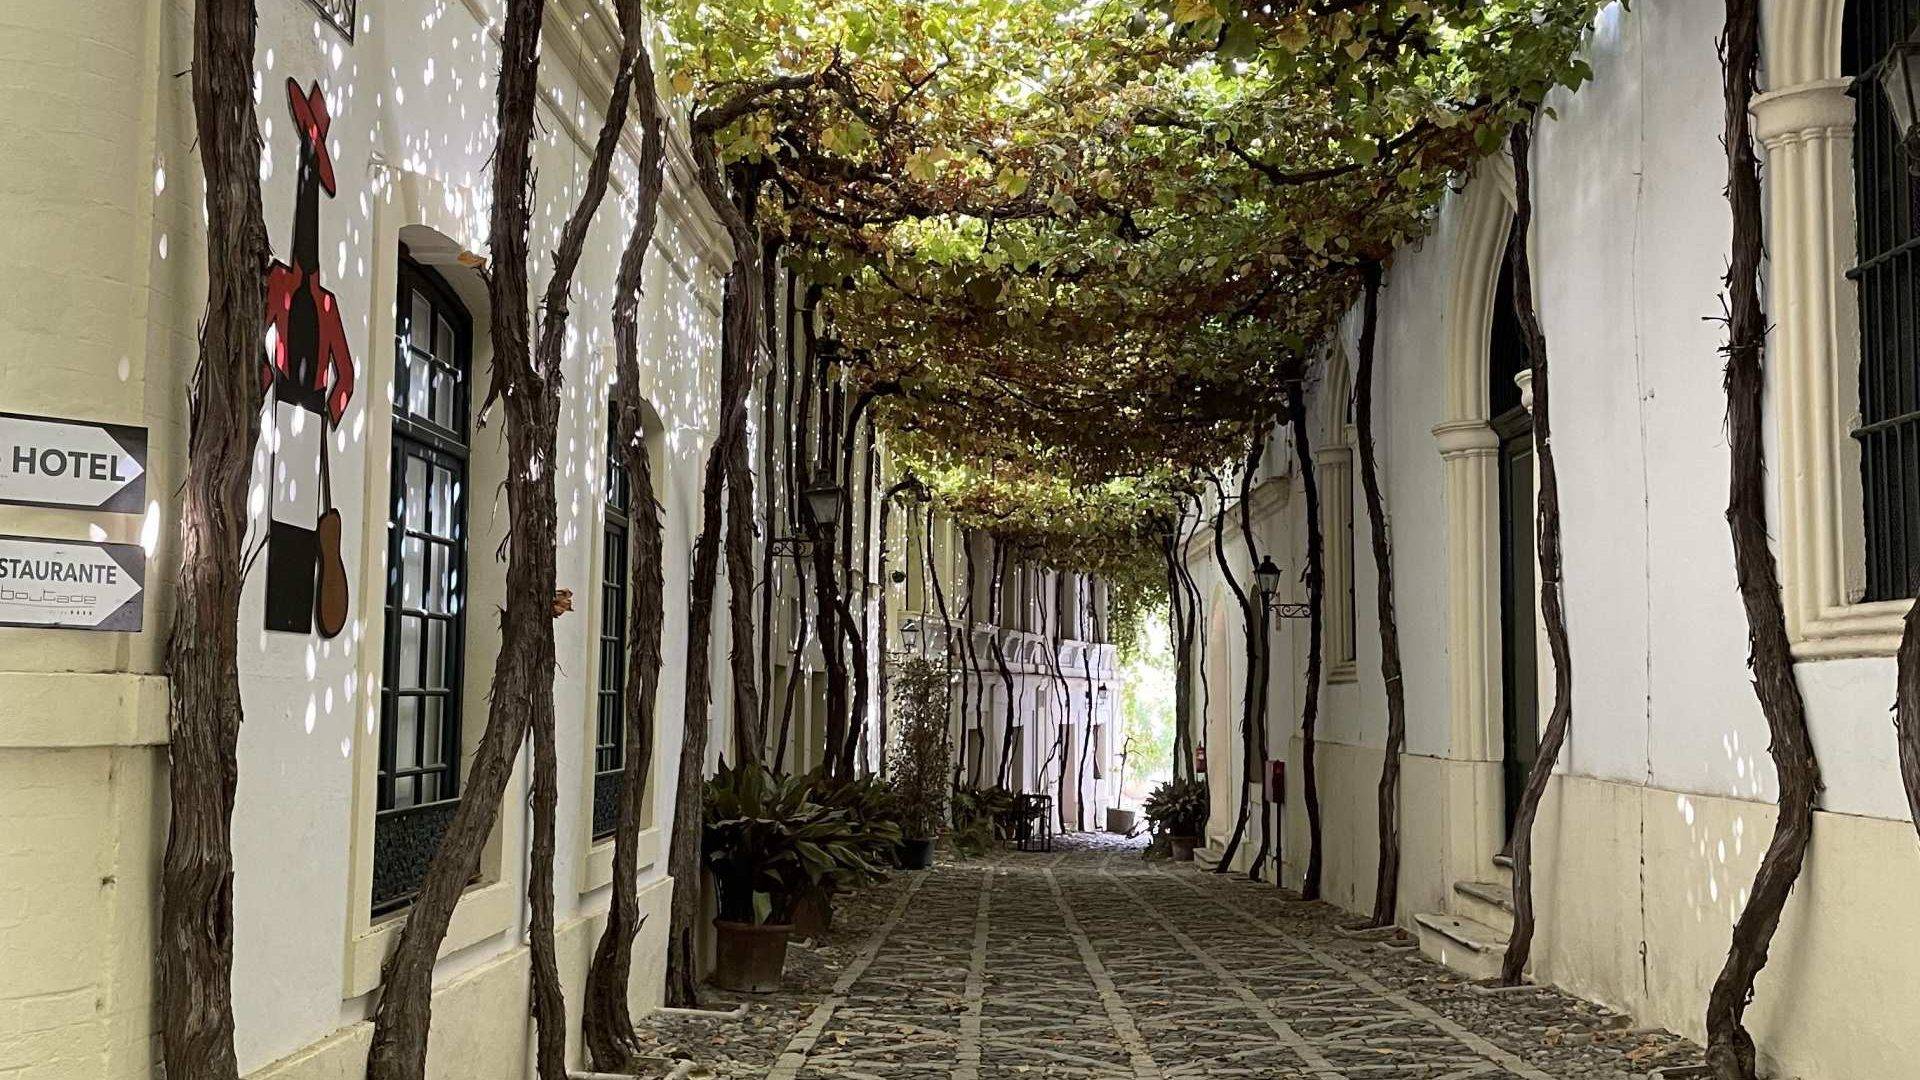 Una de las calles más bonitas del mundo: Calle Ciegos, dentro de las Bodegas González Byass.